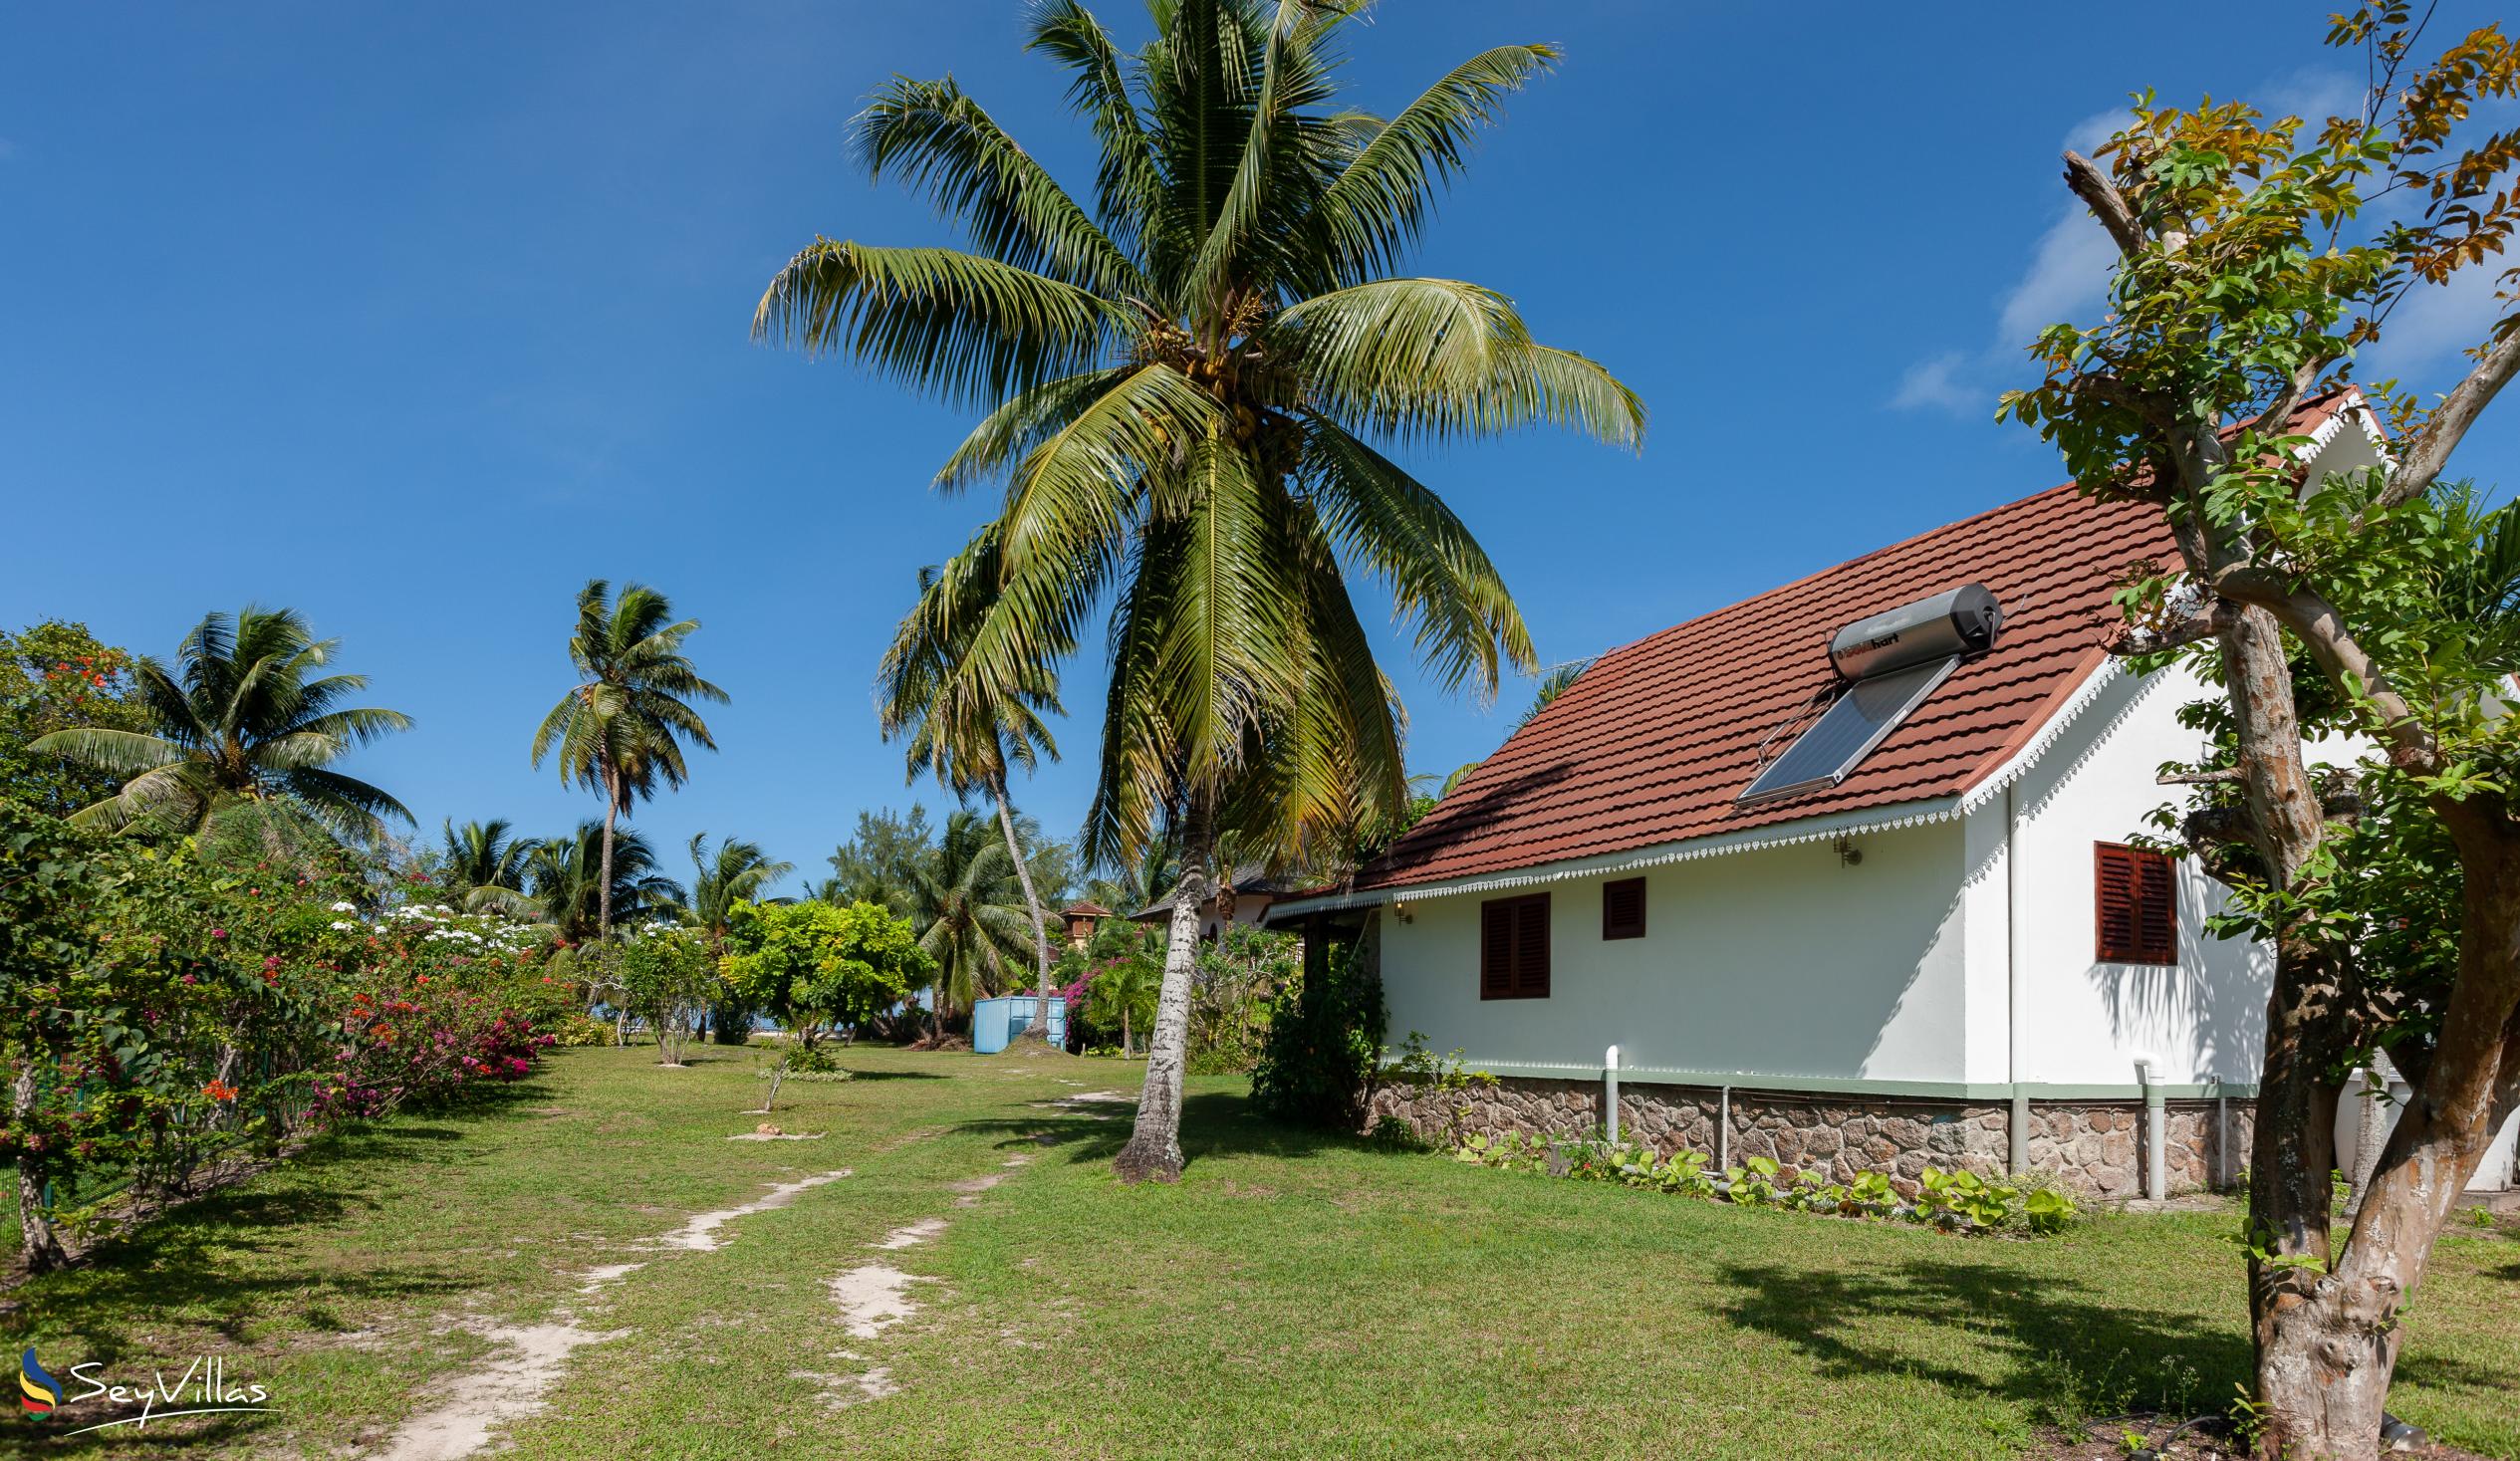 Foto 6: Villas Coco Beach - Extérieur - Praslin (Seychelles)